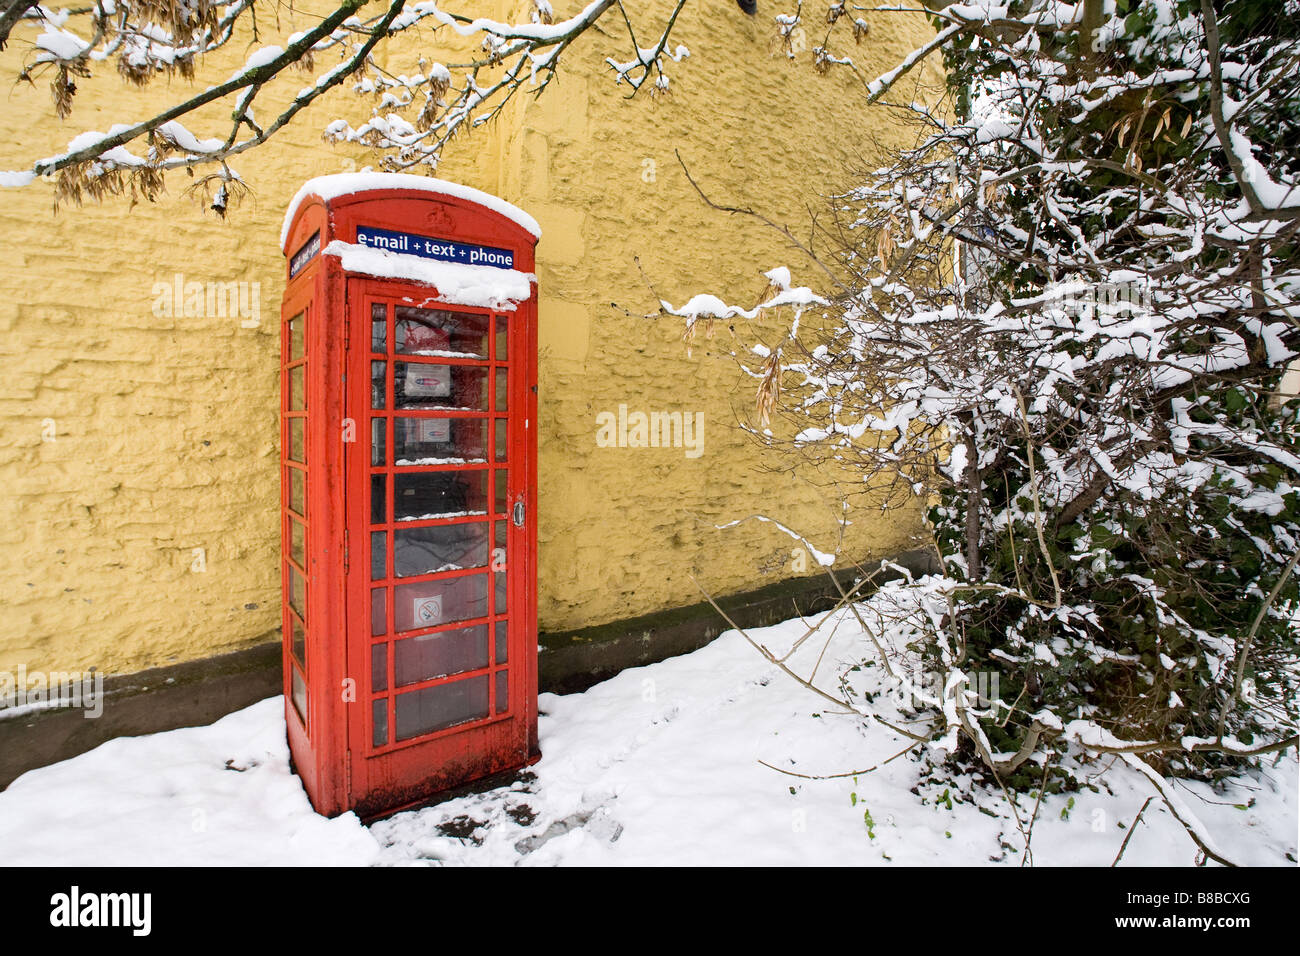 Uk téléphone rouge fort photographié sur un jour de neige. Banque D'Images